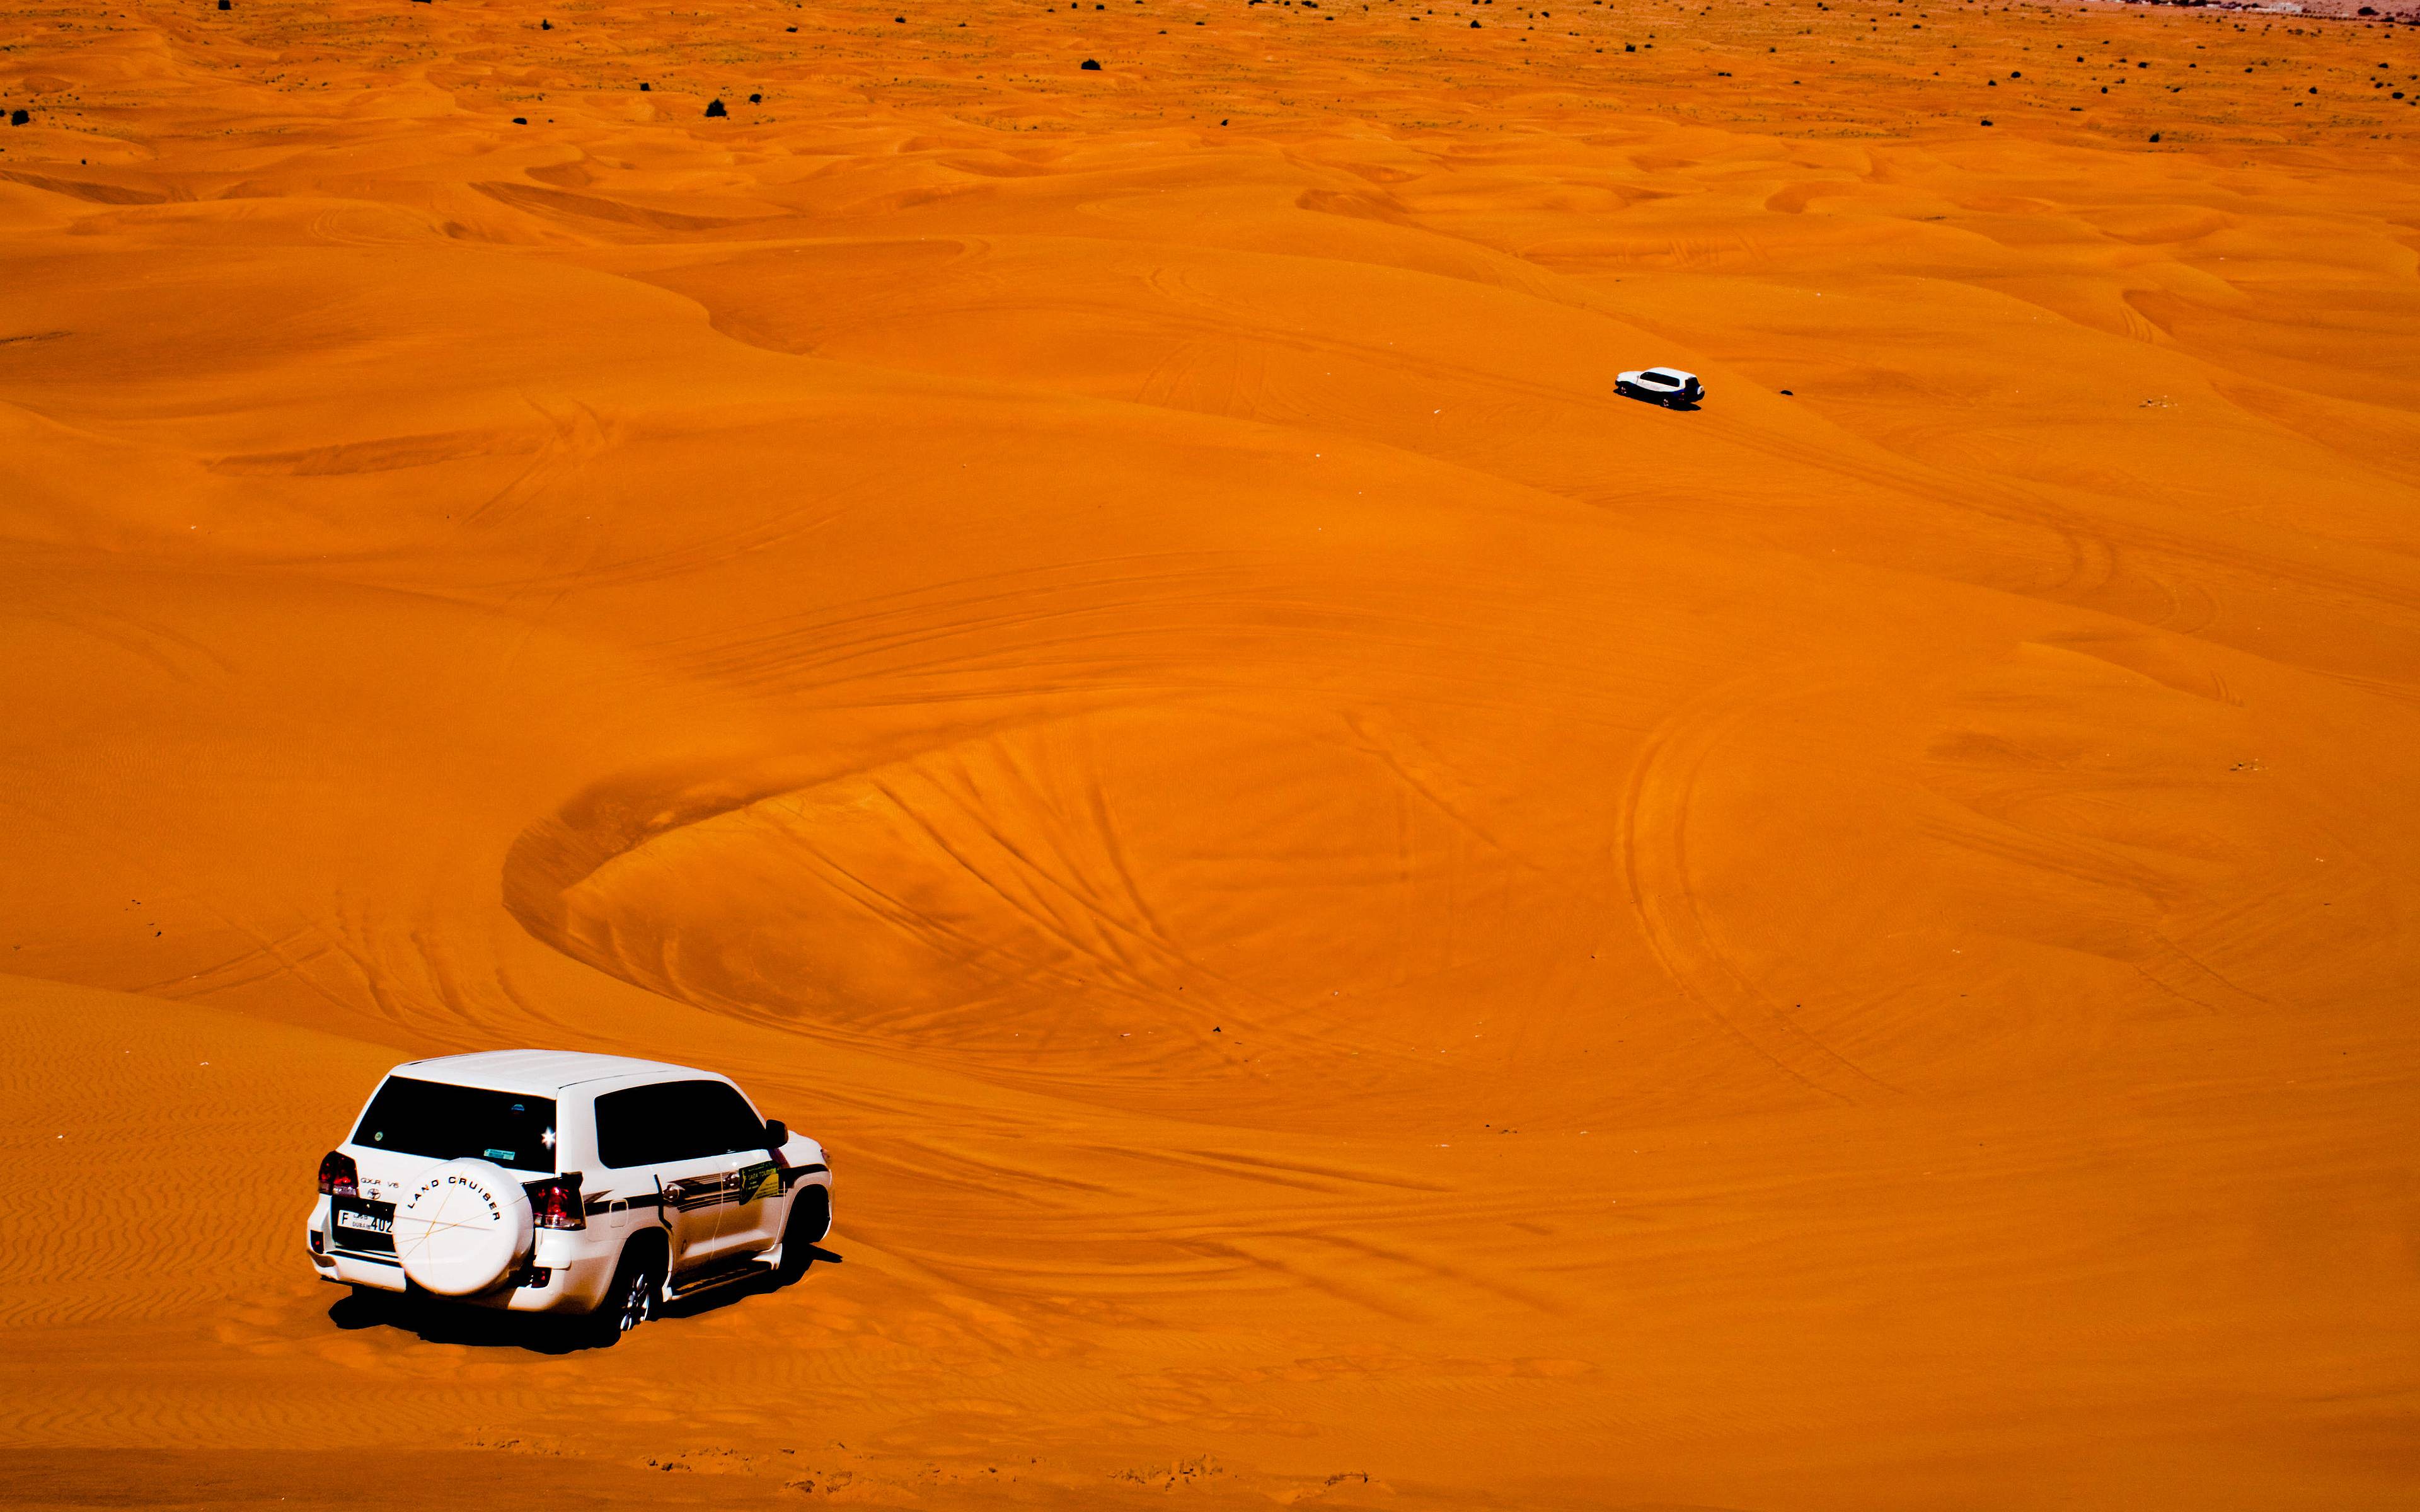 Safari nel deserto